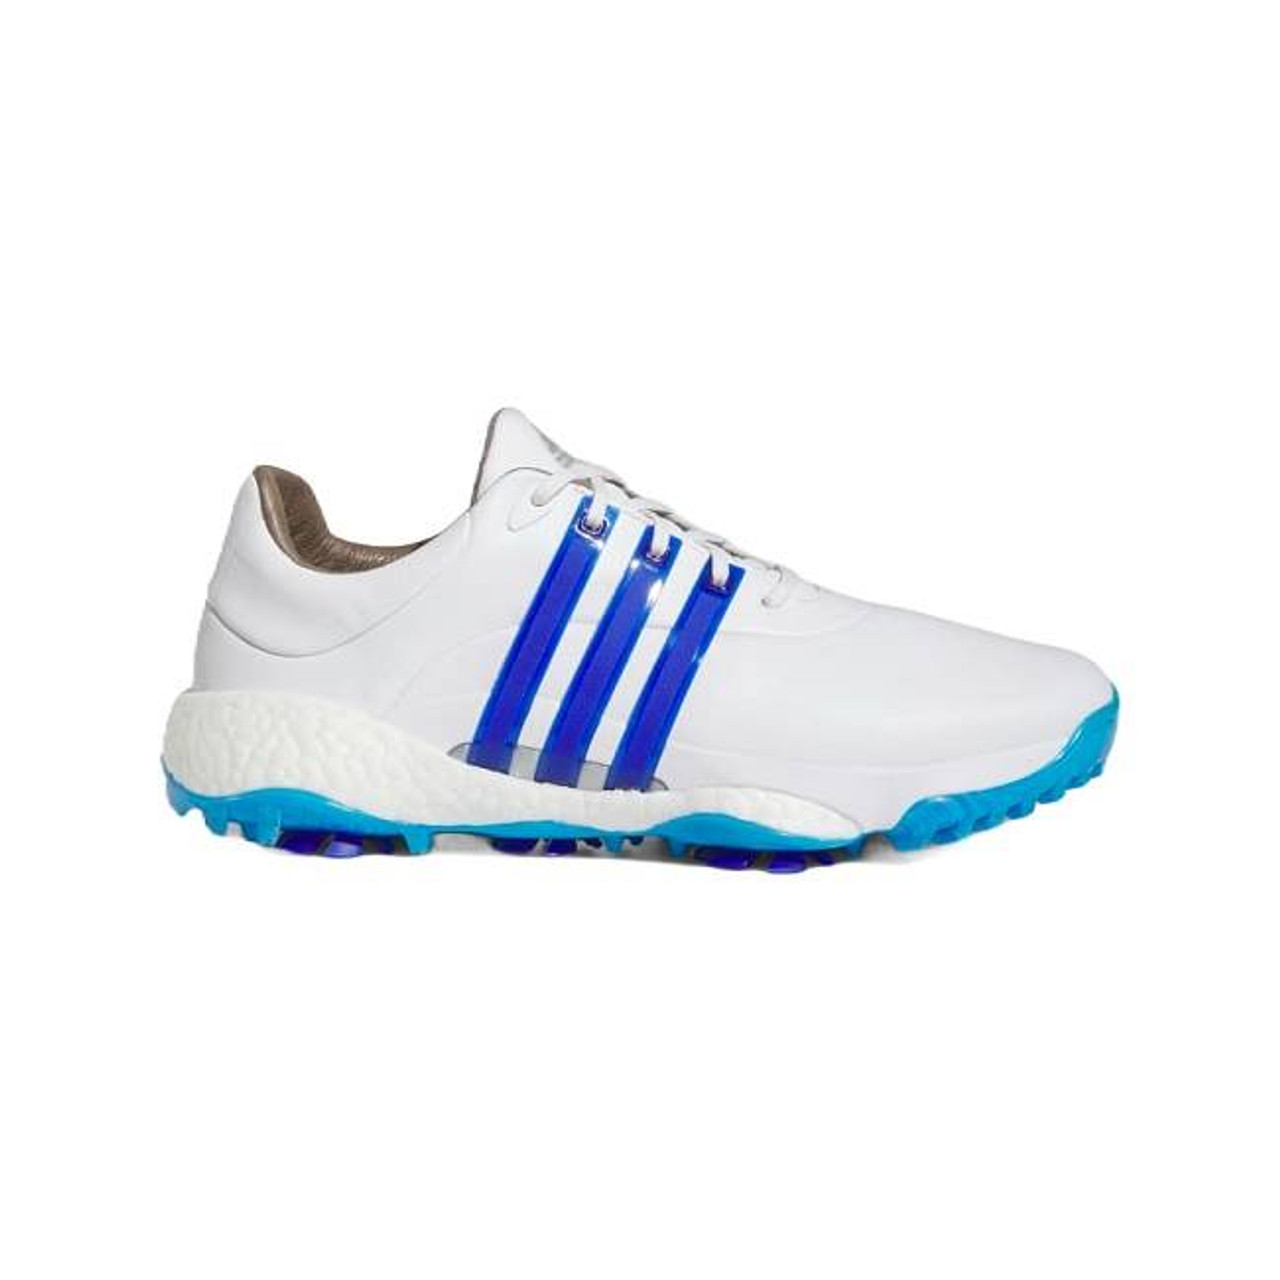 Adidas Golf Tour360 22 Shoes |